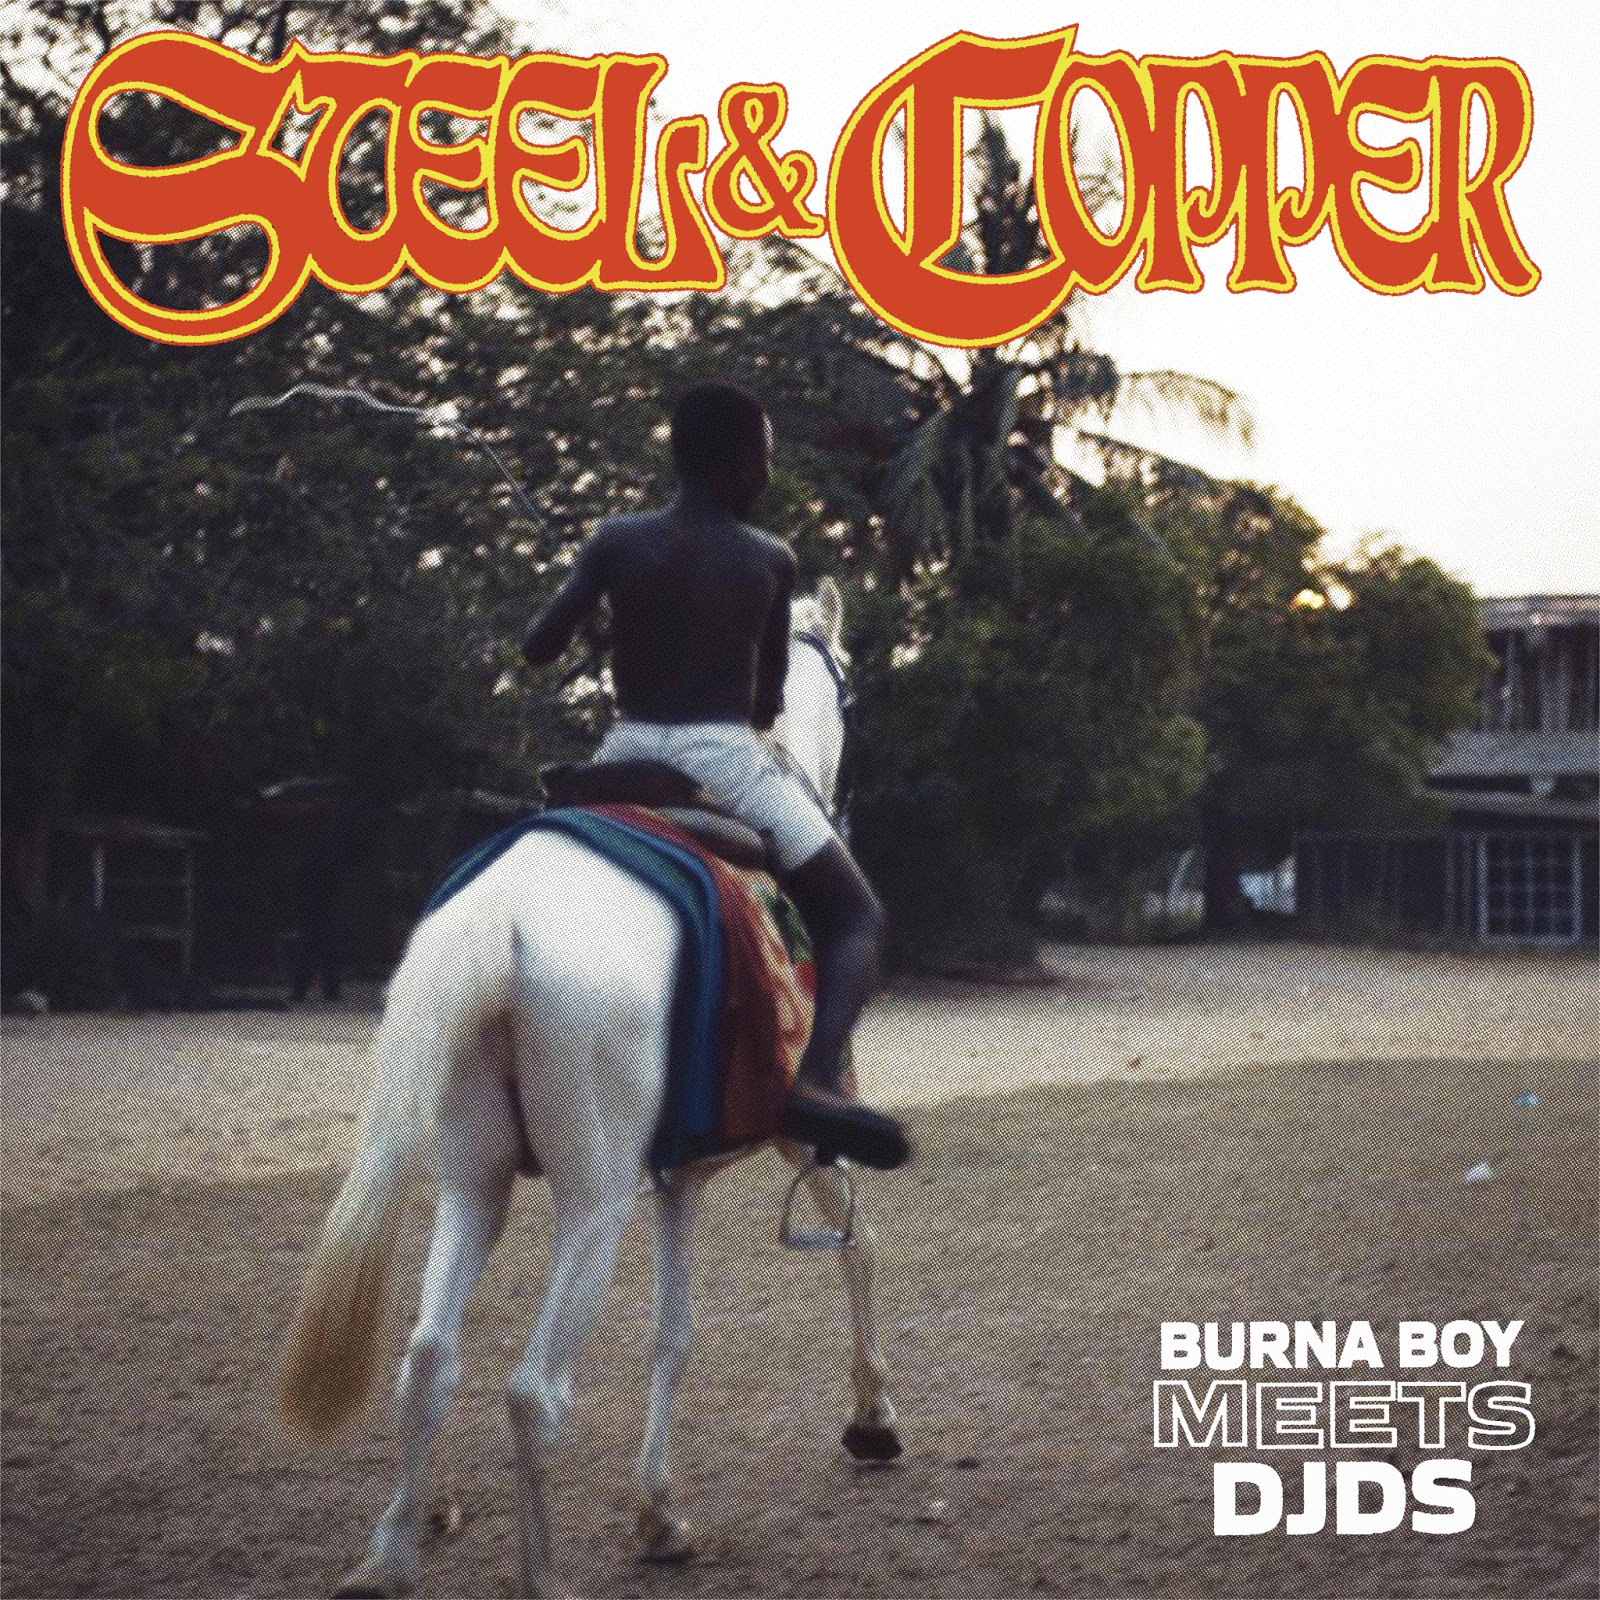 Stream: Burna Boy X DJDS – Steel & Copper